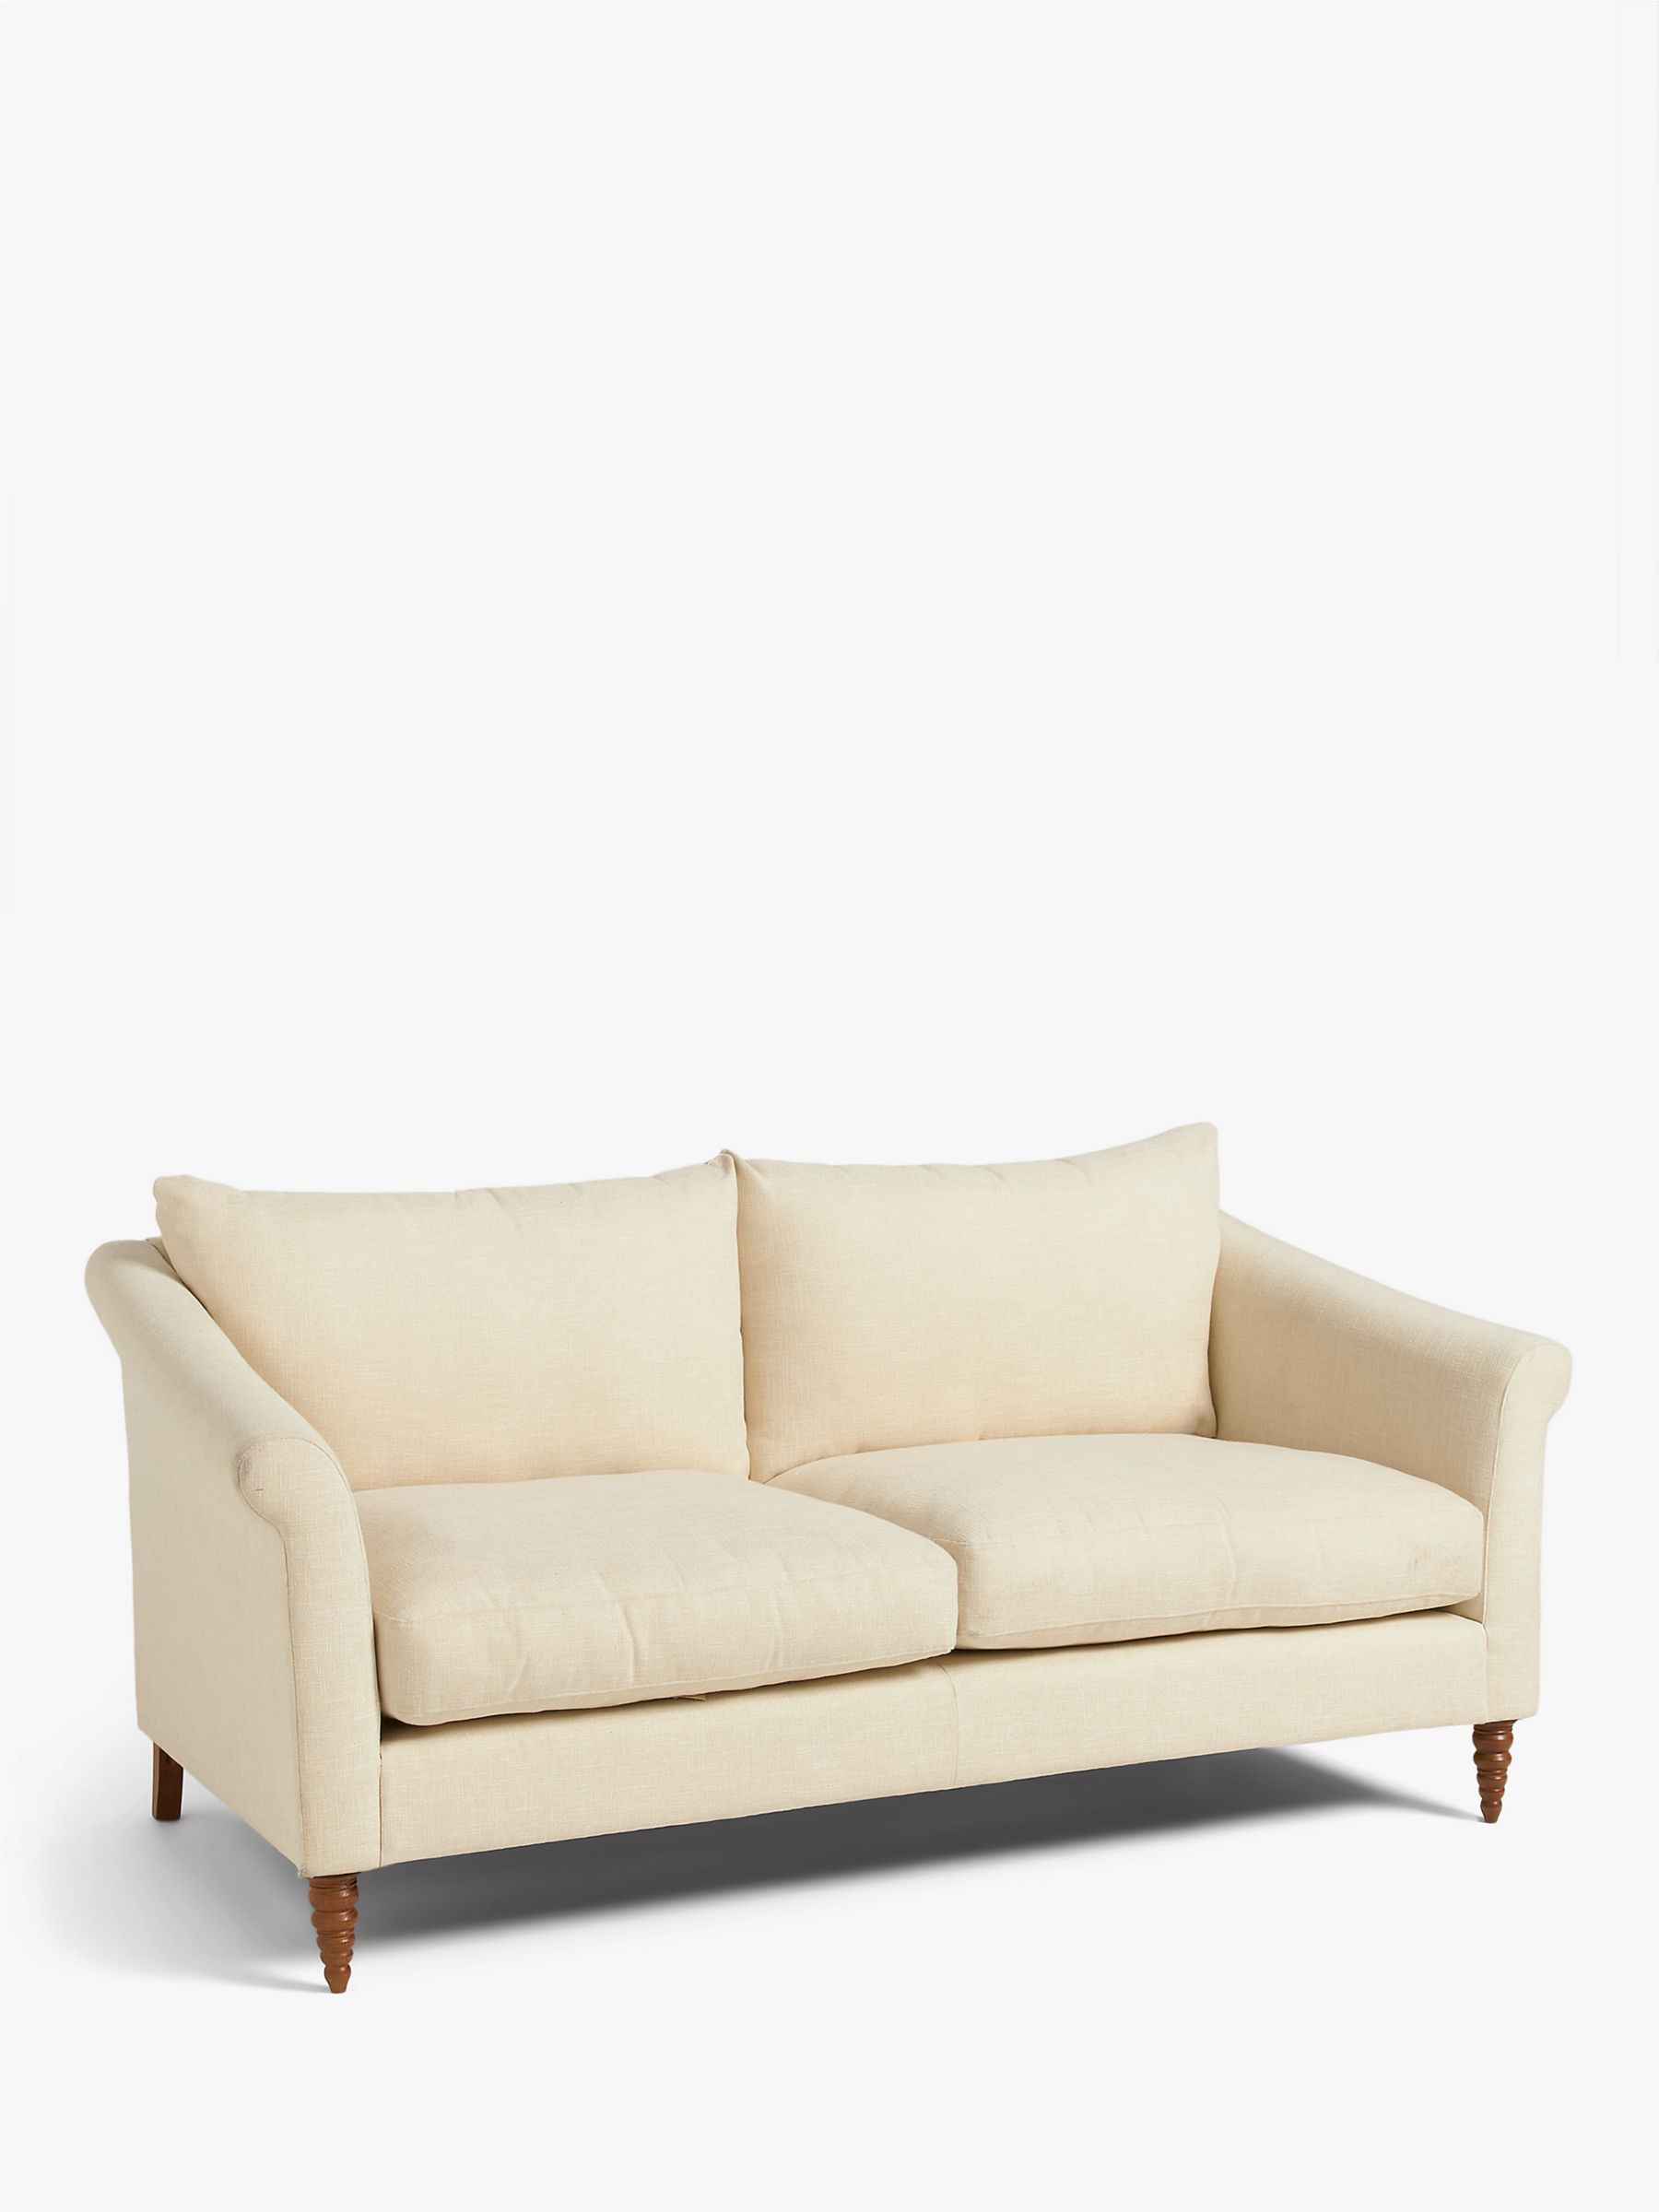 Sloane Range, John Lewis Sloane Large 2 Seater Sofa, Dark Leg, Textured Linen Natural